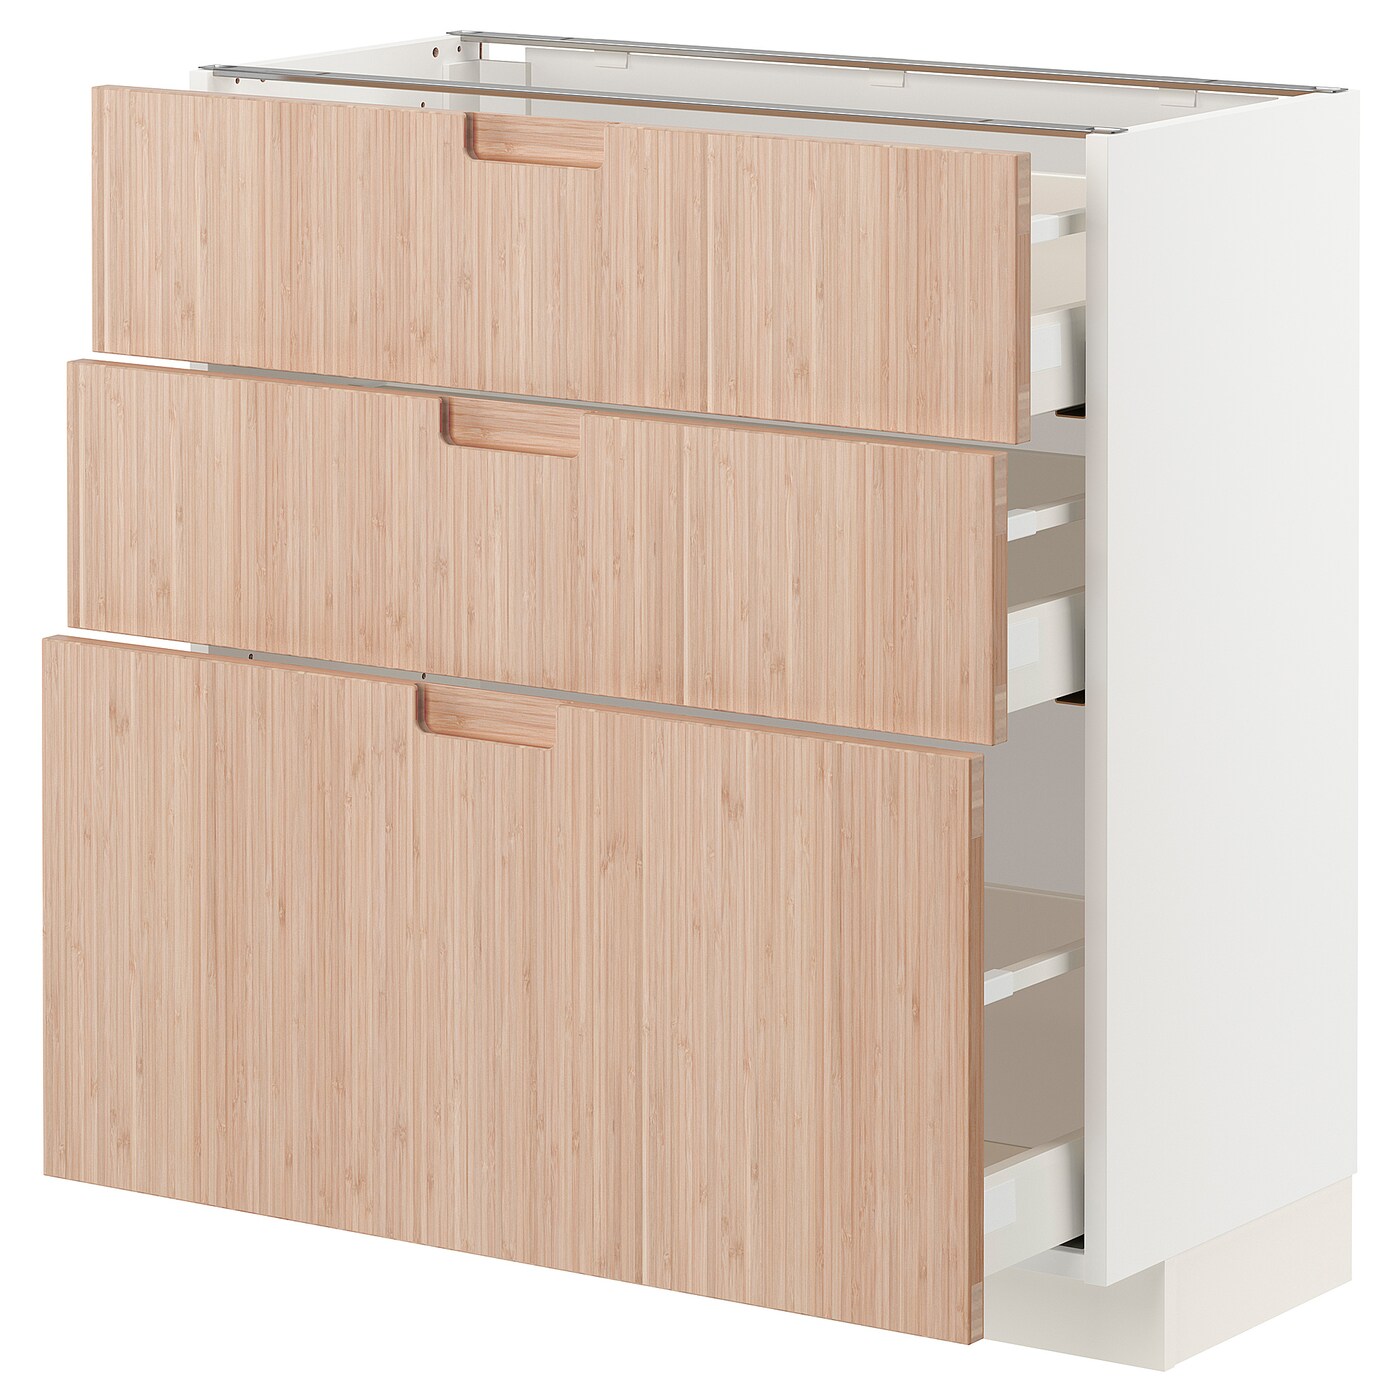 Напольный кухонный шкаф  - IKEA METOD MAXIMERA, 88x39x80см, белый/светлый бамбук, МЕТОД МАКСИМЕРА ИКЕА